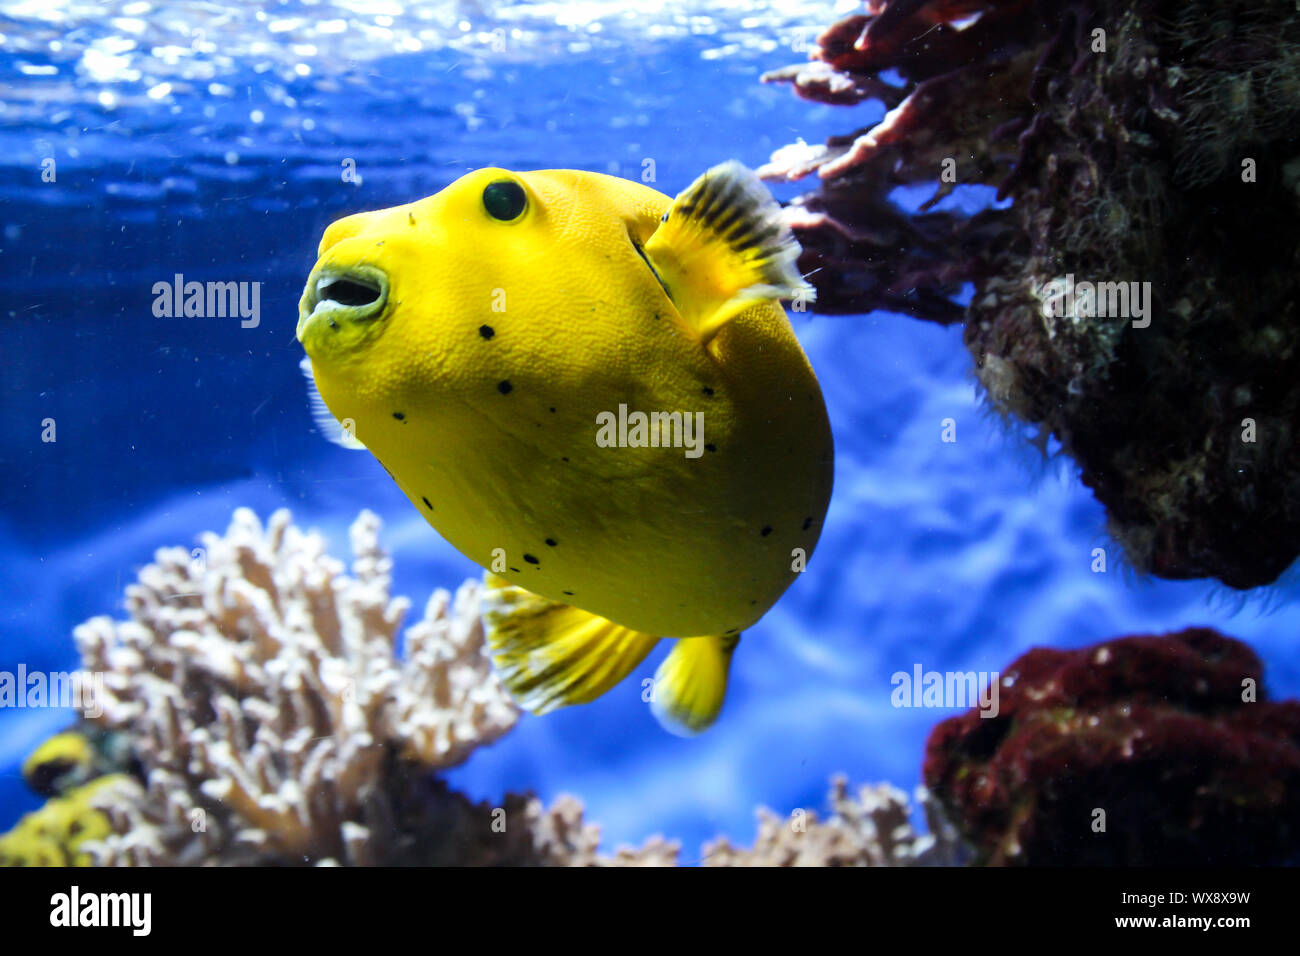 Pufferfish in the reef Stock Photo